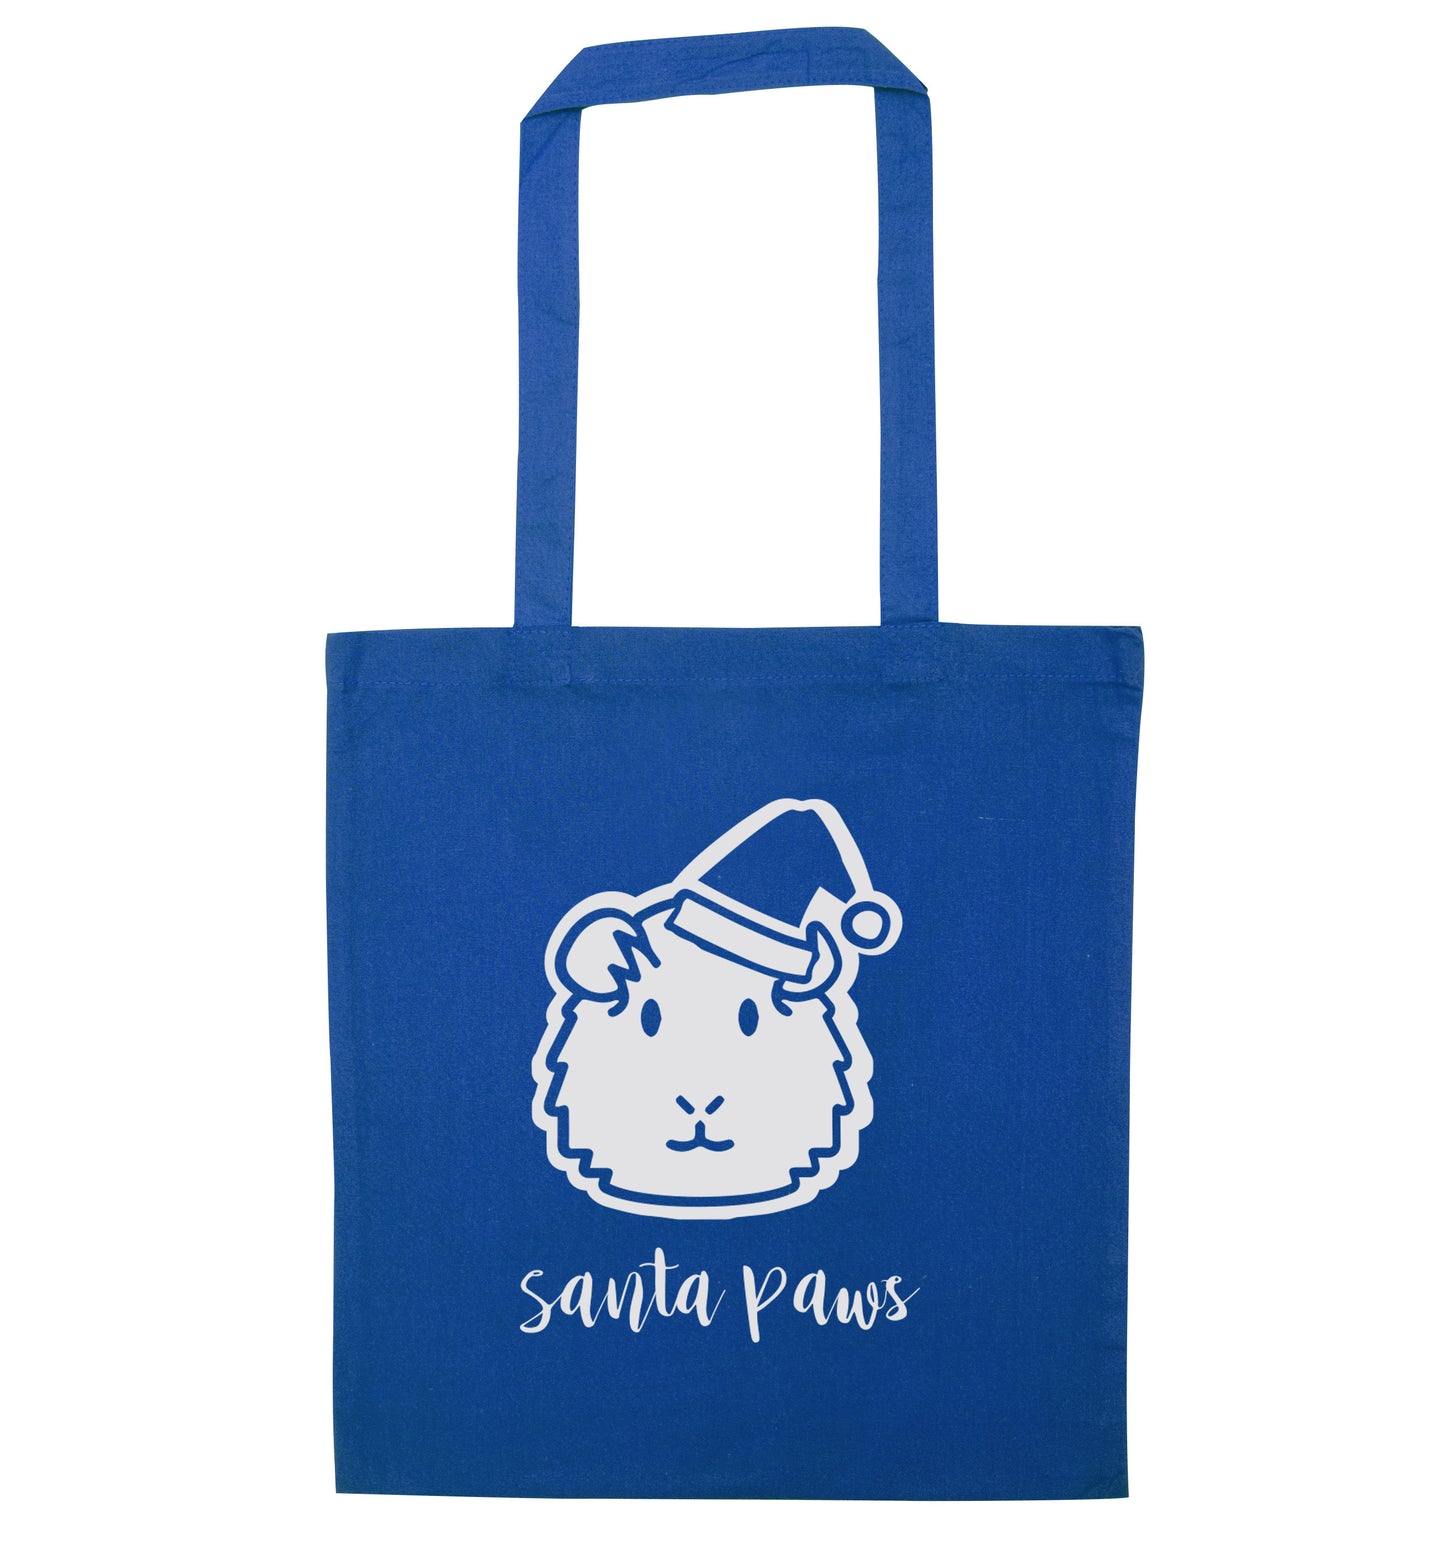 Guinea pig Santa Paws blue tote bag